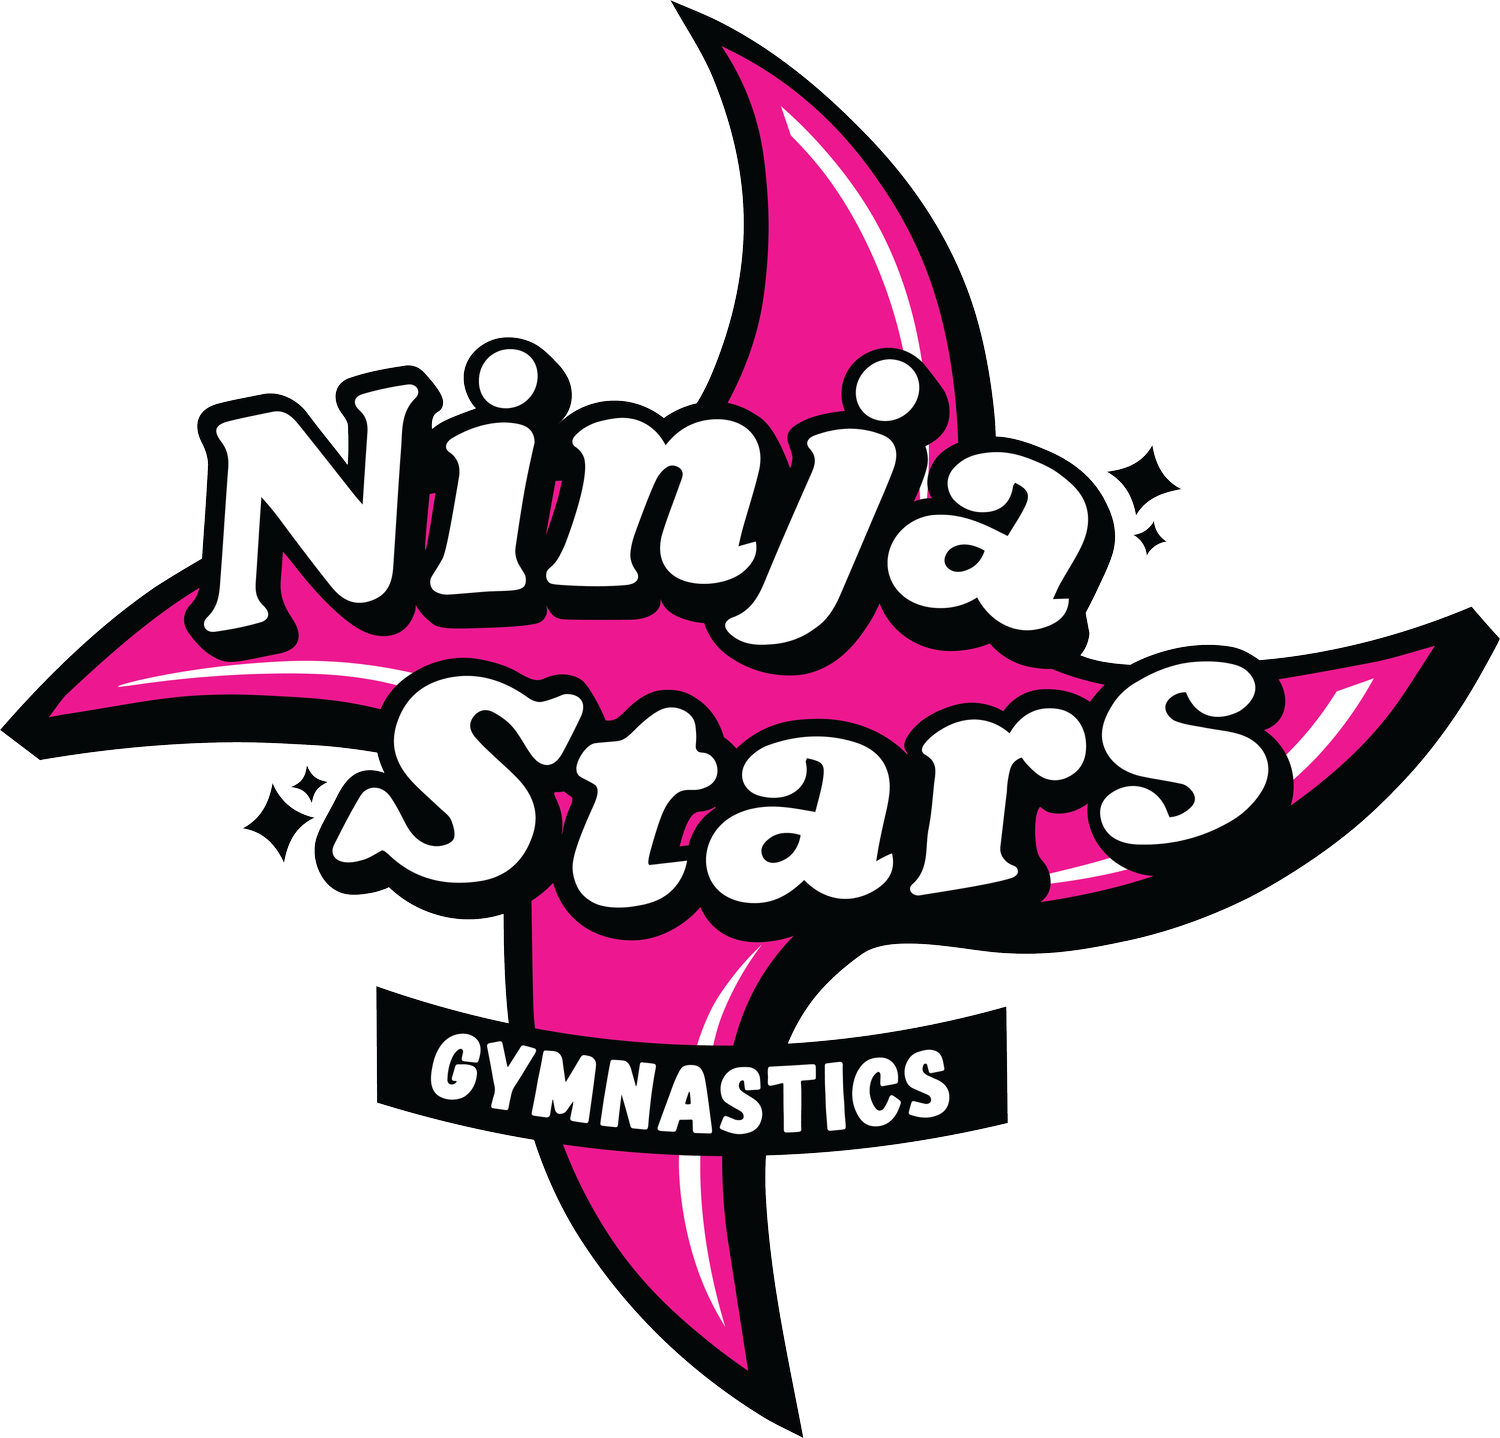 Ninja Stars Gymnastics